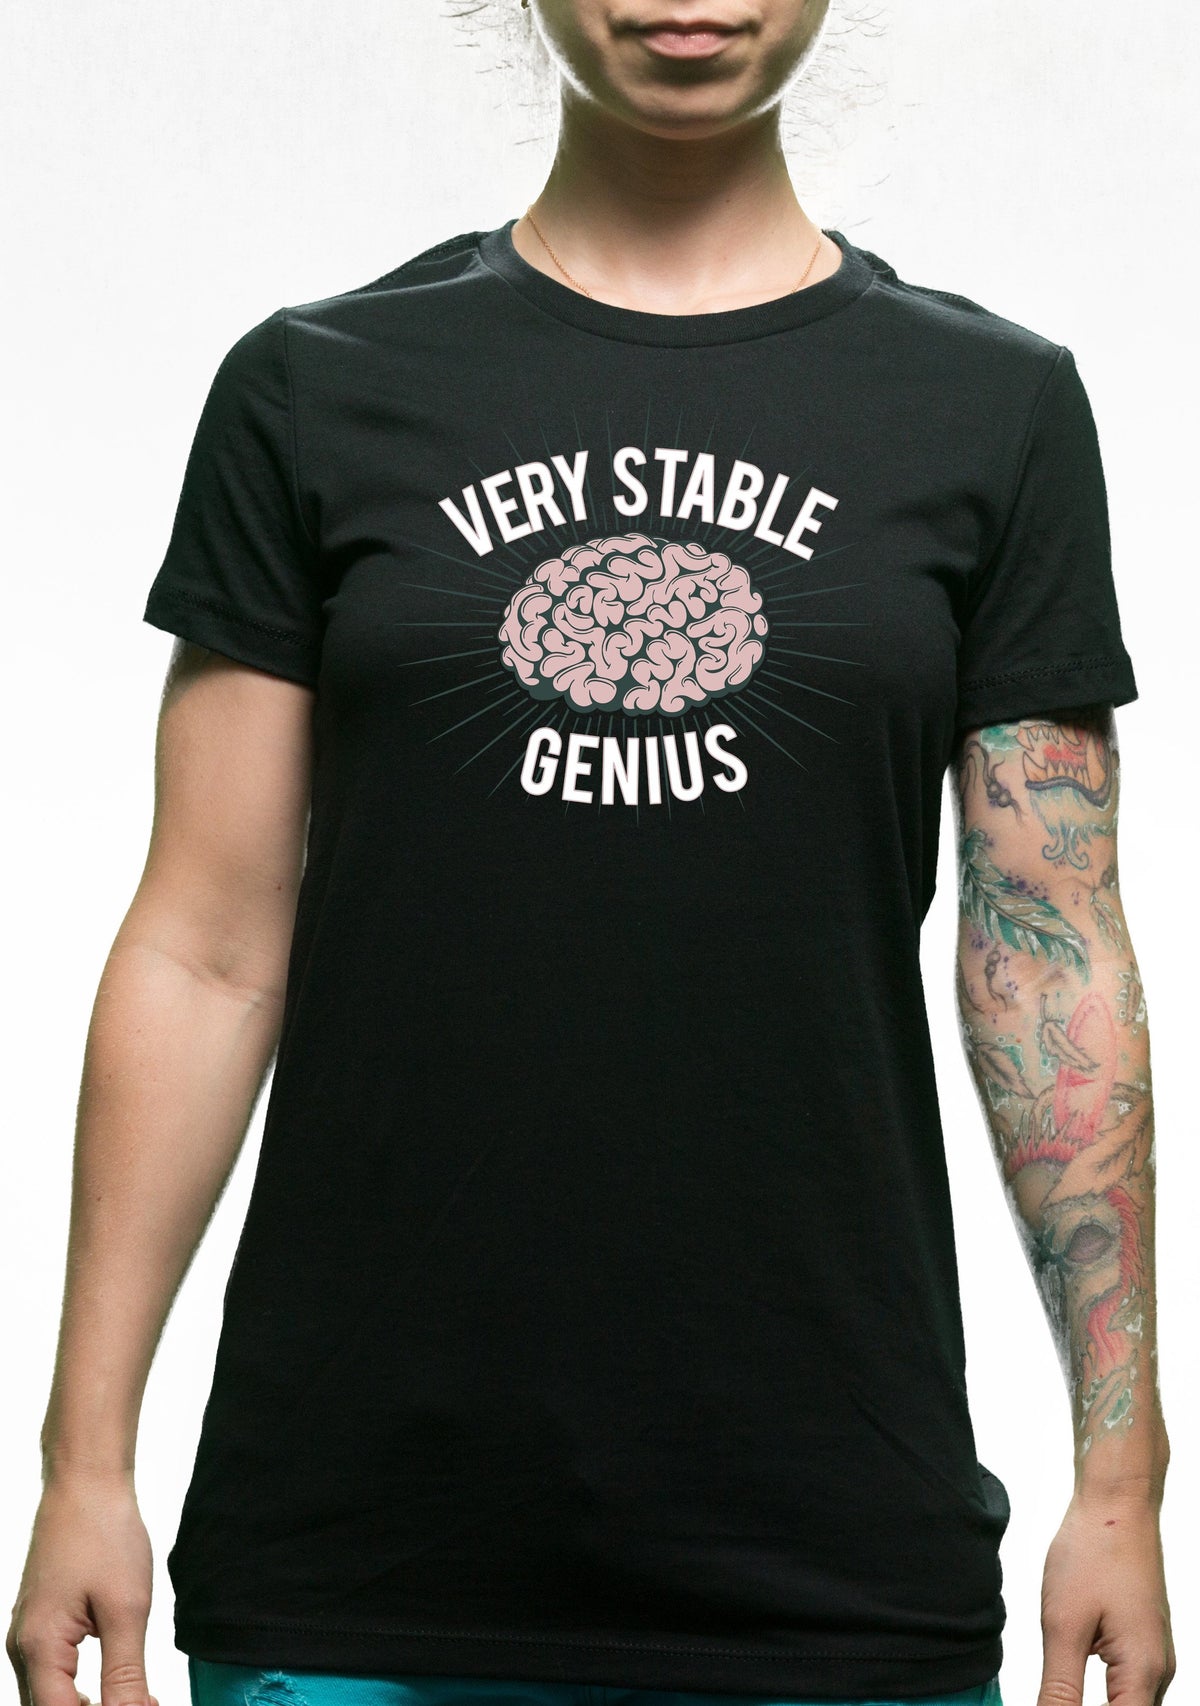 Camiseta Genius muy estable